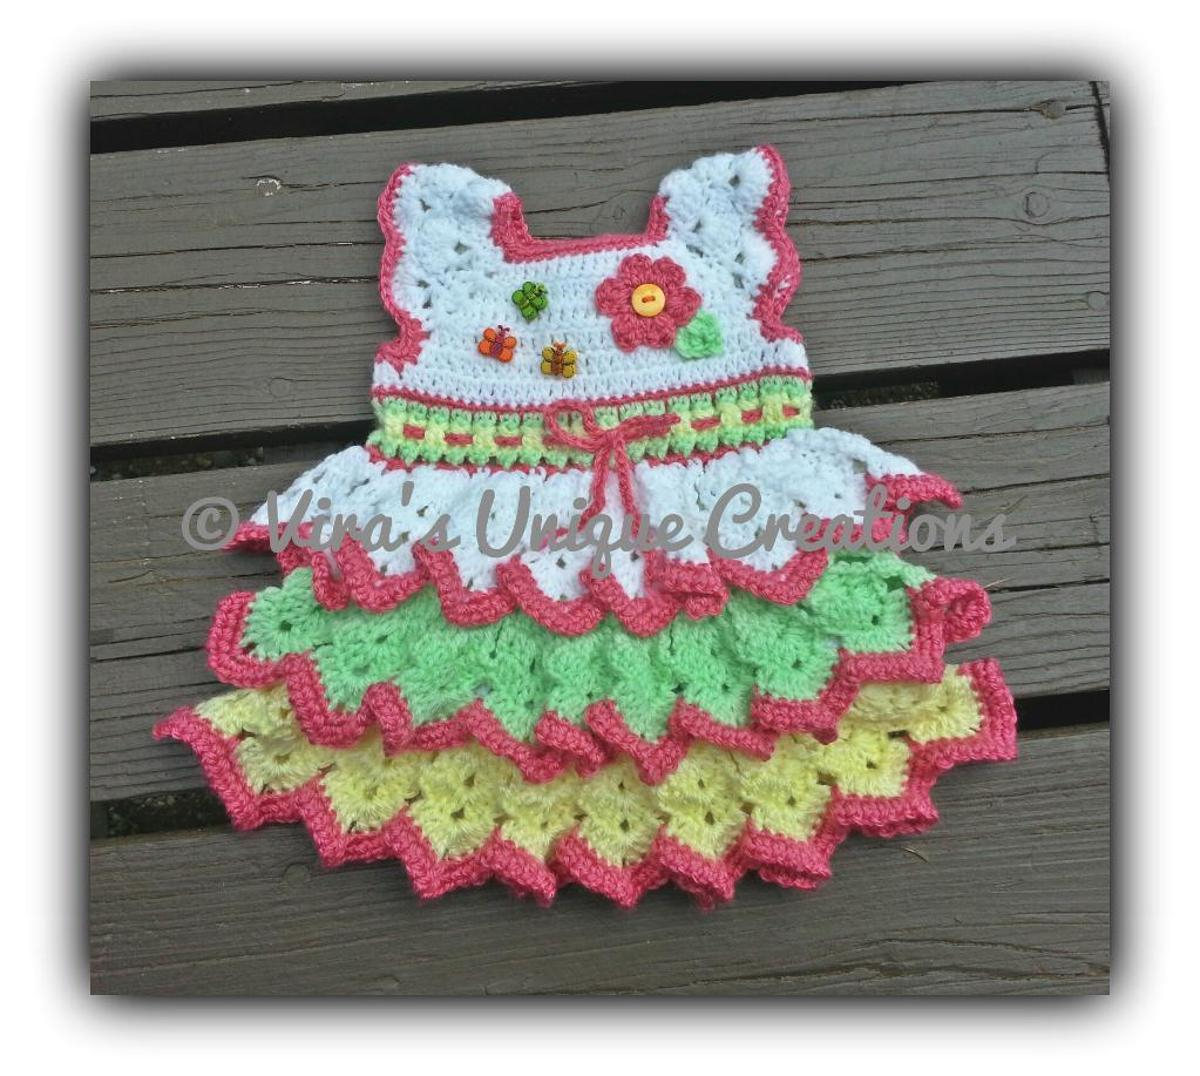 Crochet Baby Dress Free Pattern Crochet A Free Pretty Ba Girl Dress Pattern